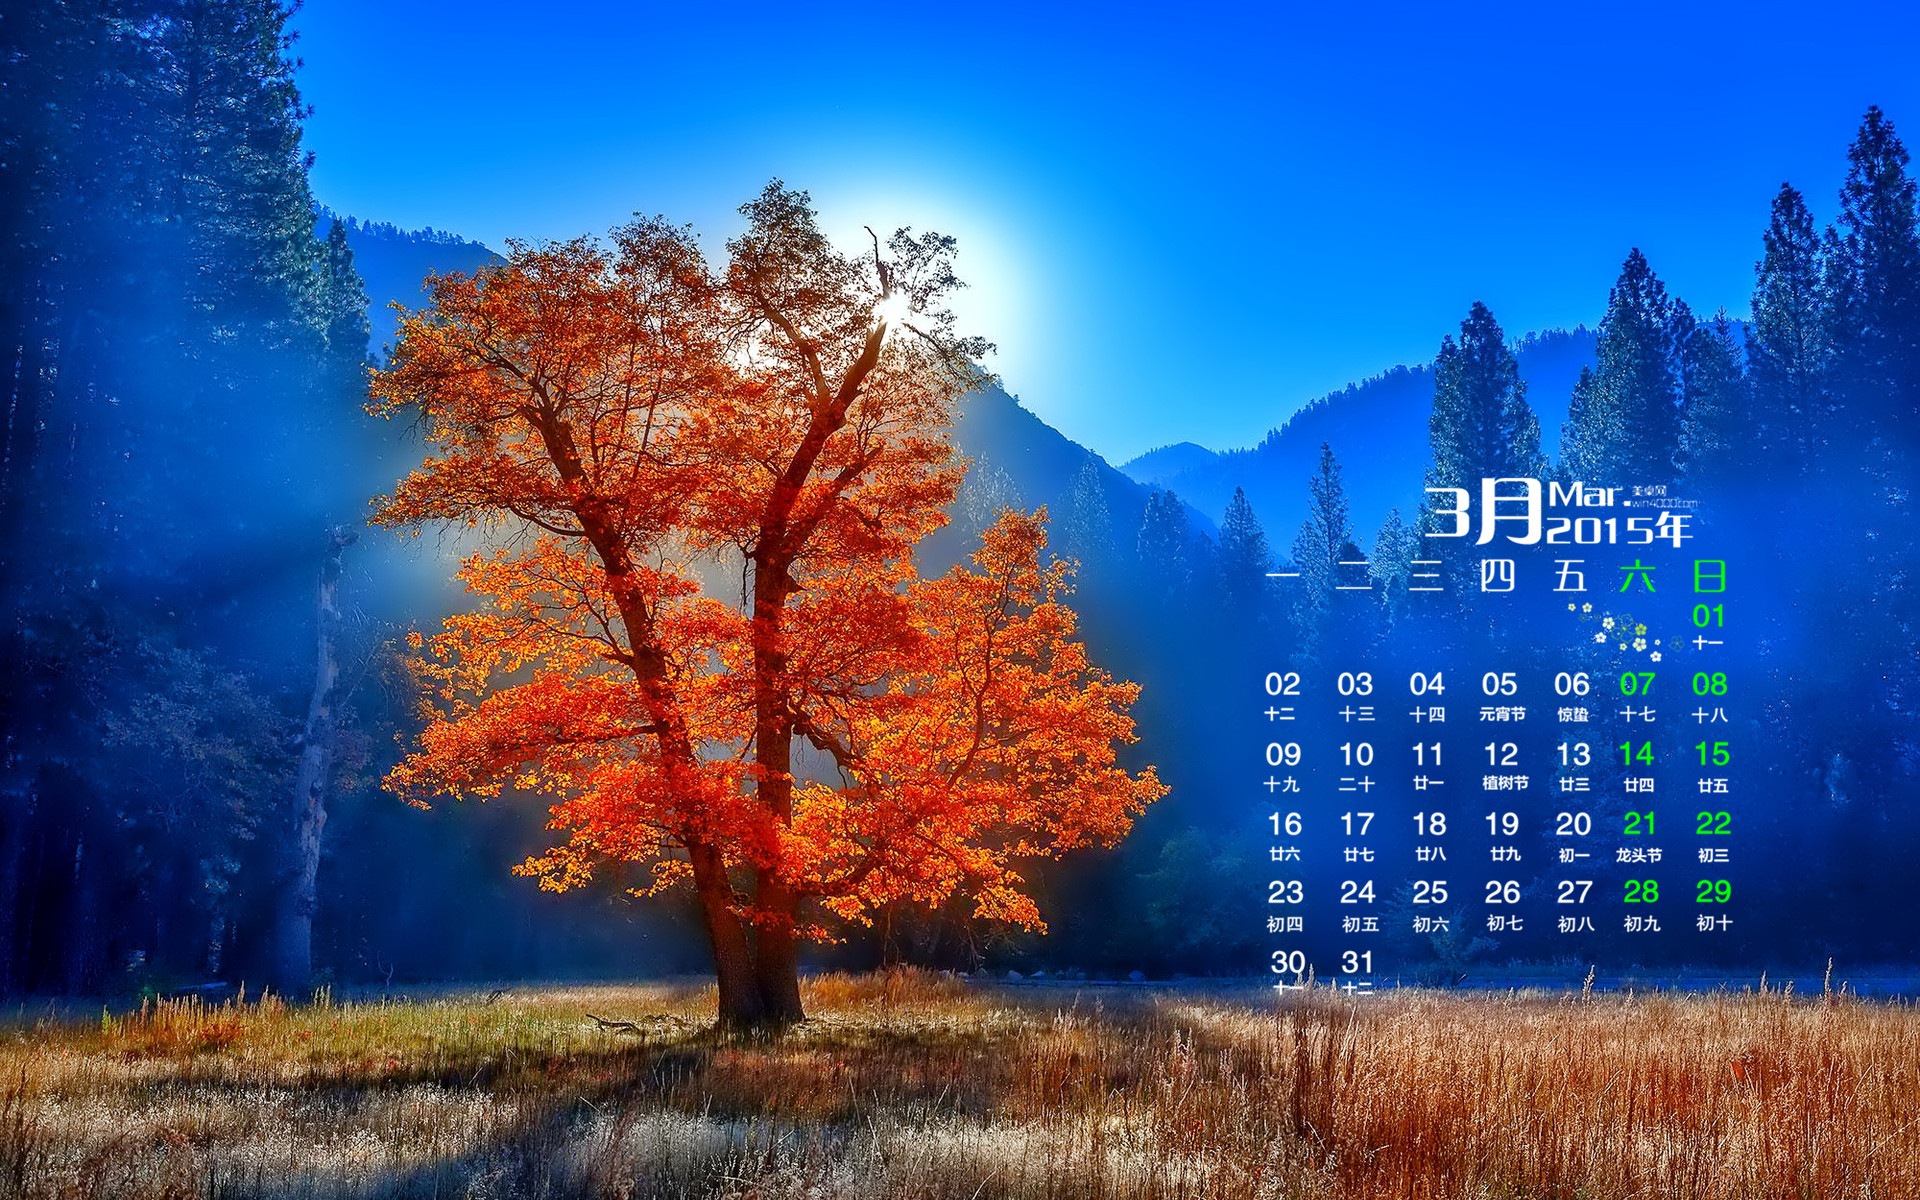 March 2015 Calendar wallpaper (1) #16 - 1920x1200